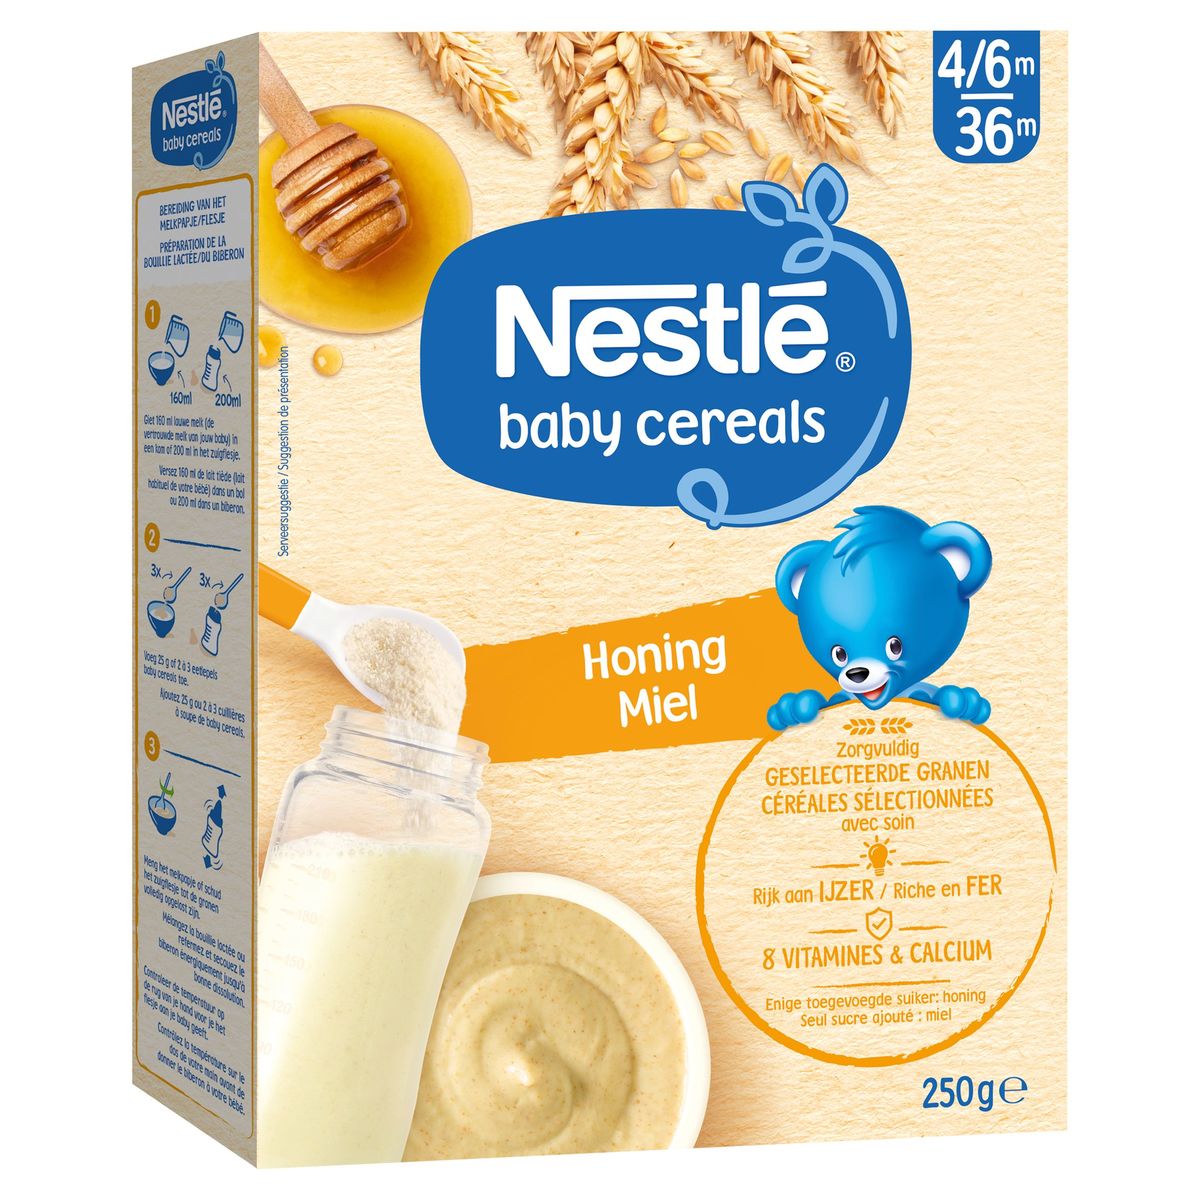 Nestlé Baby Cereals Céréales bébé Miel dès 6 mois 250g